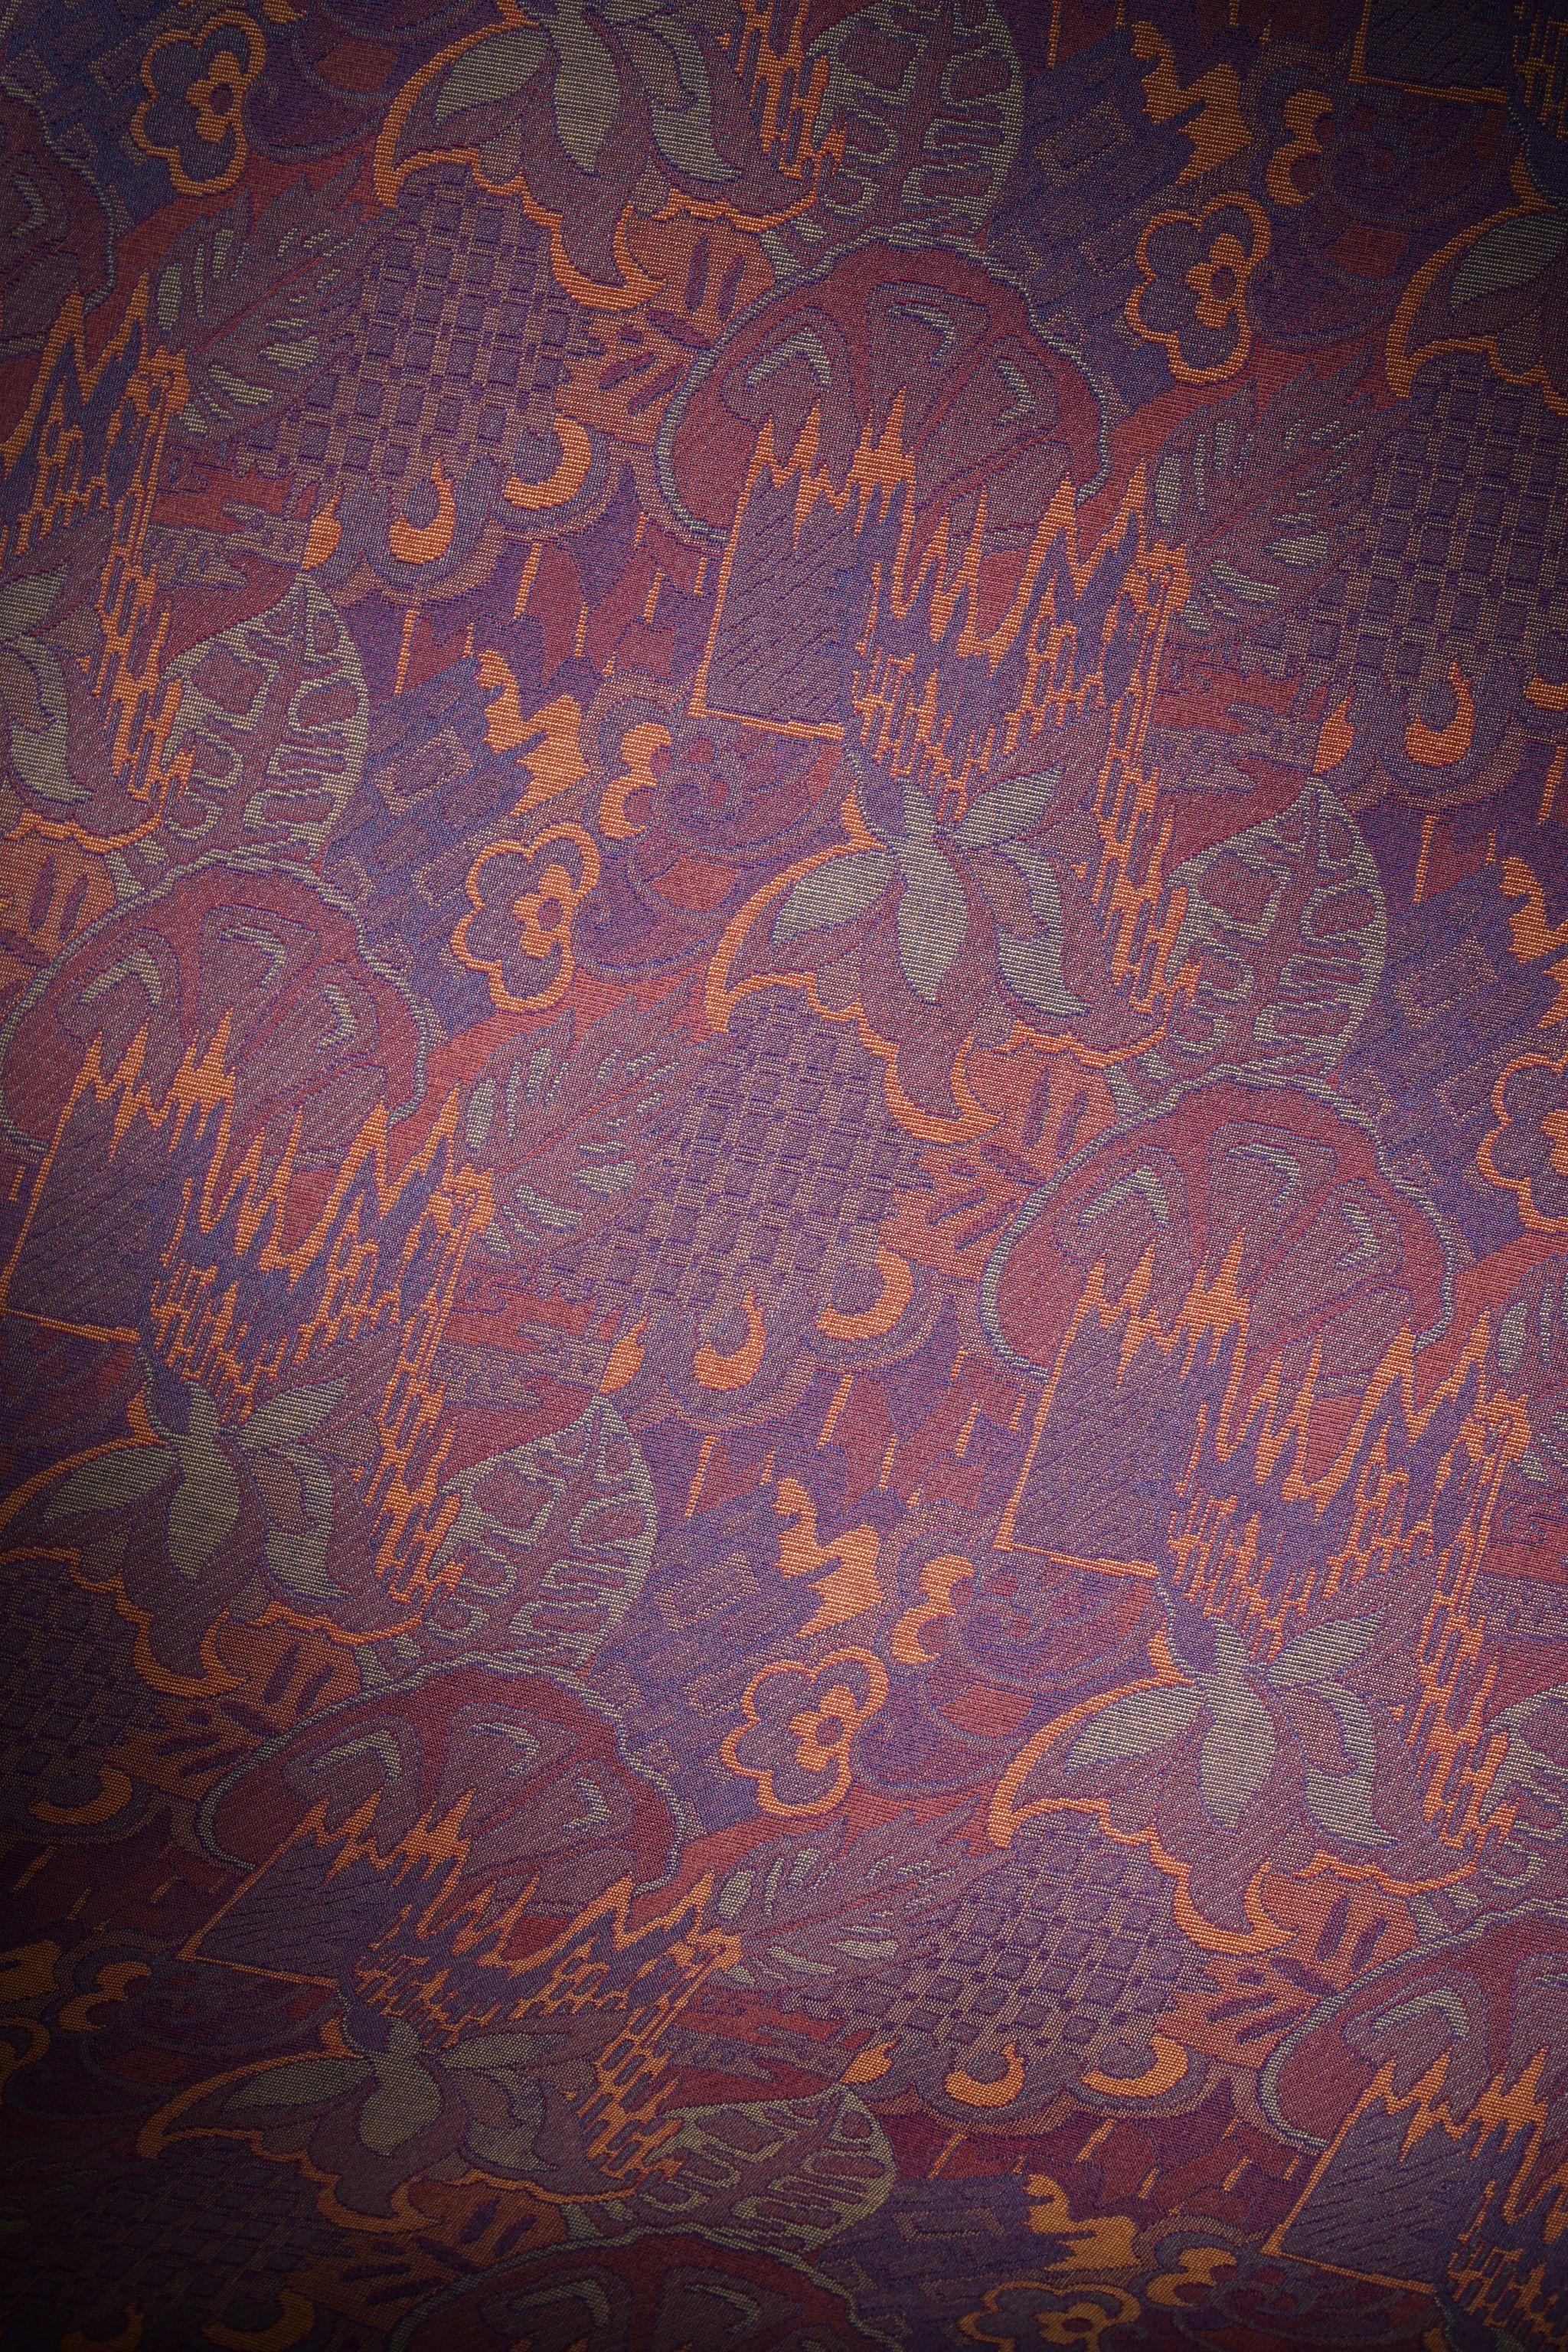 Merveilleux tissu obélisque vintage avec ornements Art Nouveau dans un mélange de coton et de viscose. Belle combinaison de couleurs : violet, orange, bleu et rouge. Acquis dans les années 80. Une belle opportunité d'avoir vos meubles vintage